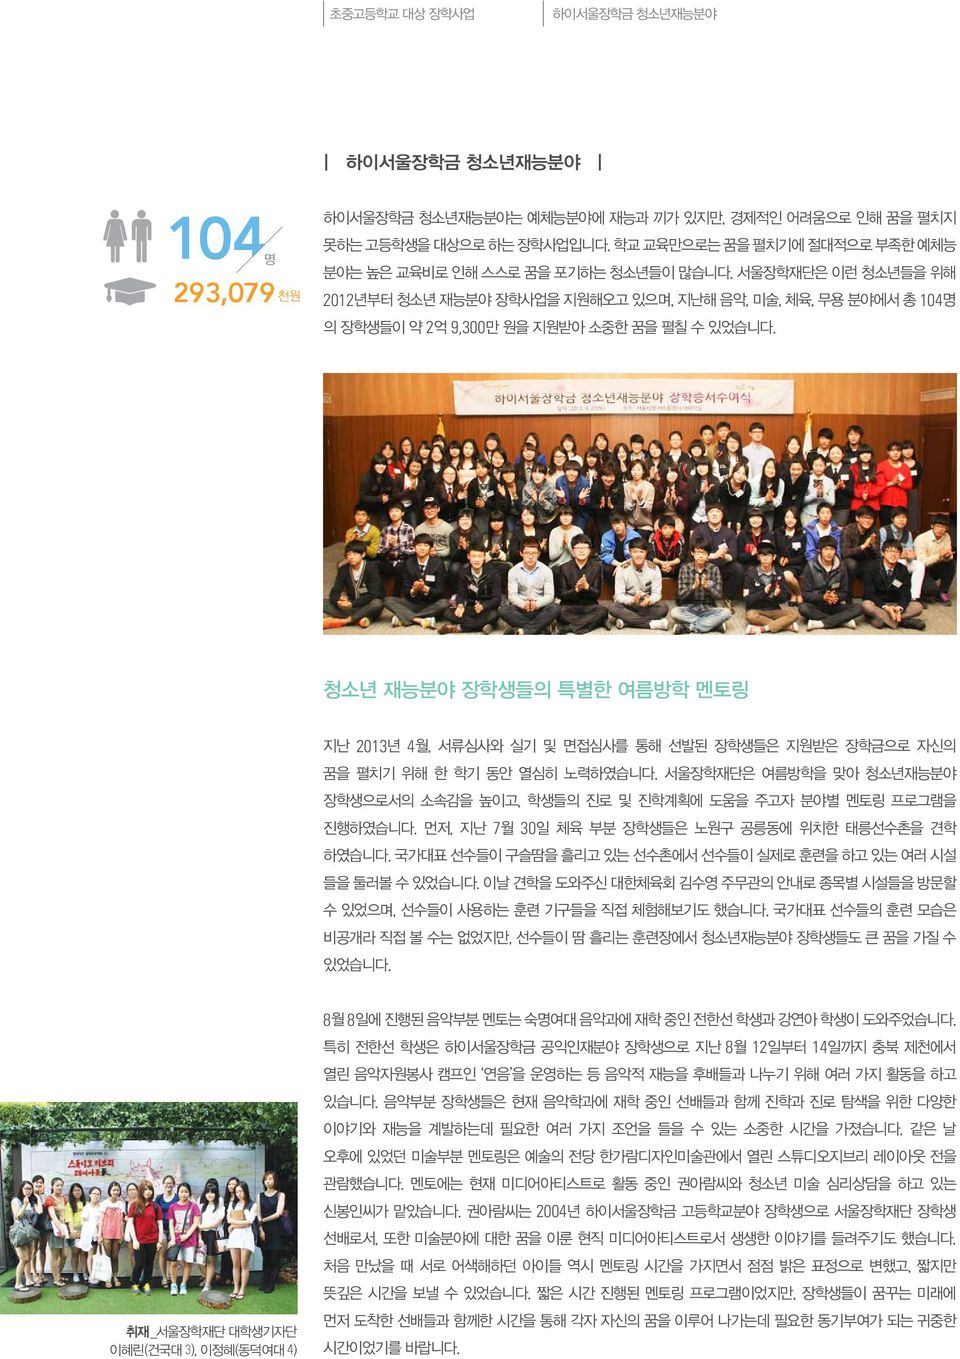 서울장학재단은 이런 청소년들을 위해 2012년부터 청소년 재능분야 장학사업을 지원해오고 있으며, 지난해 음악, 미술, 체육, 무용 분야에서 총 104명 의 장학생들이 약 2억 9,300만 원을 지원받아 소중한 꿈을 펼칠 수 있었습니다.